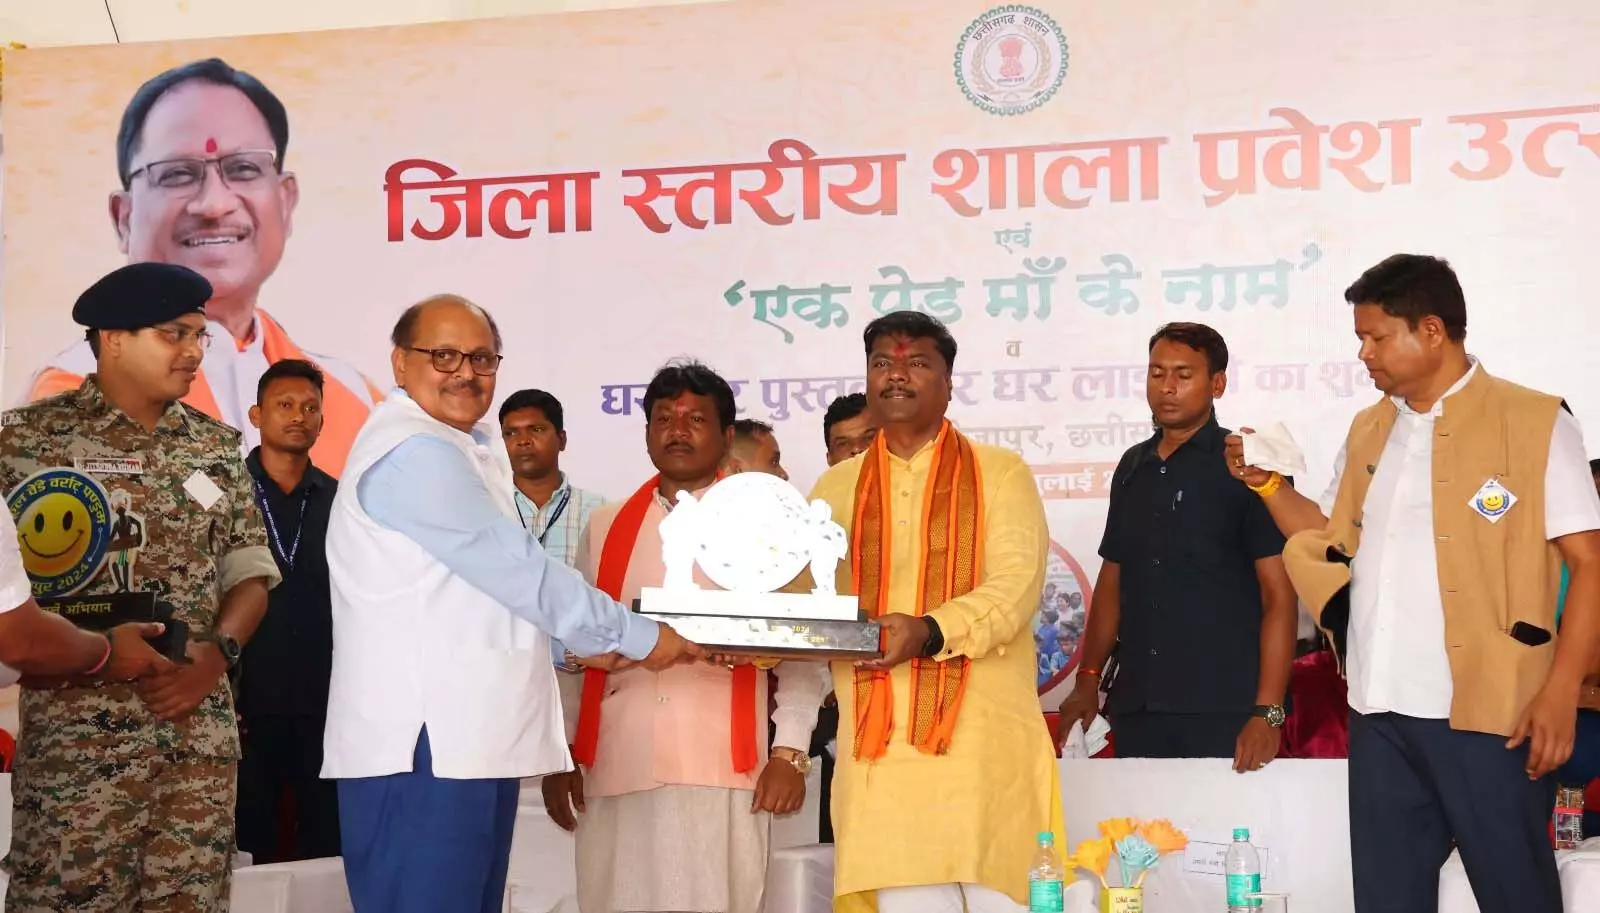 Bijapur शिक्षा के क्षेत्र में नई ऊंचाइयों को छू रहा है: मंत्री केदार कश्यप